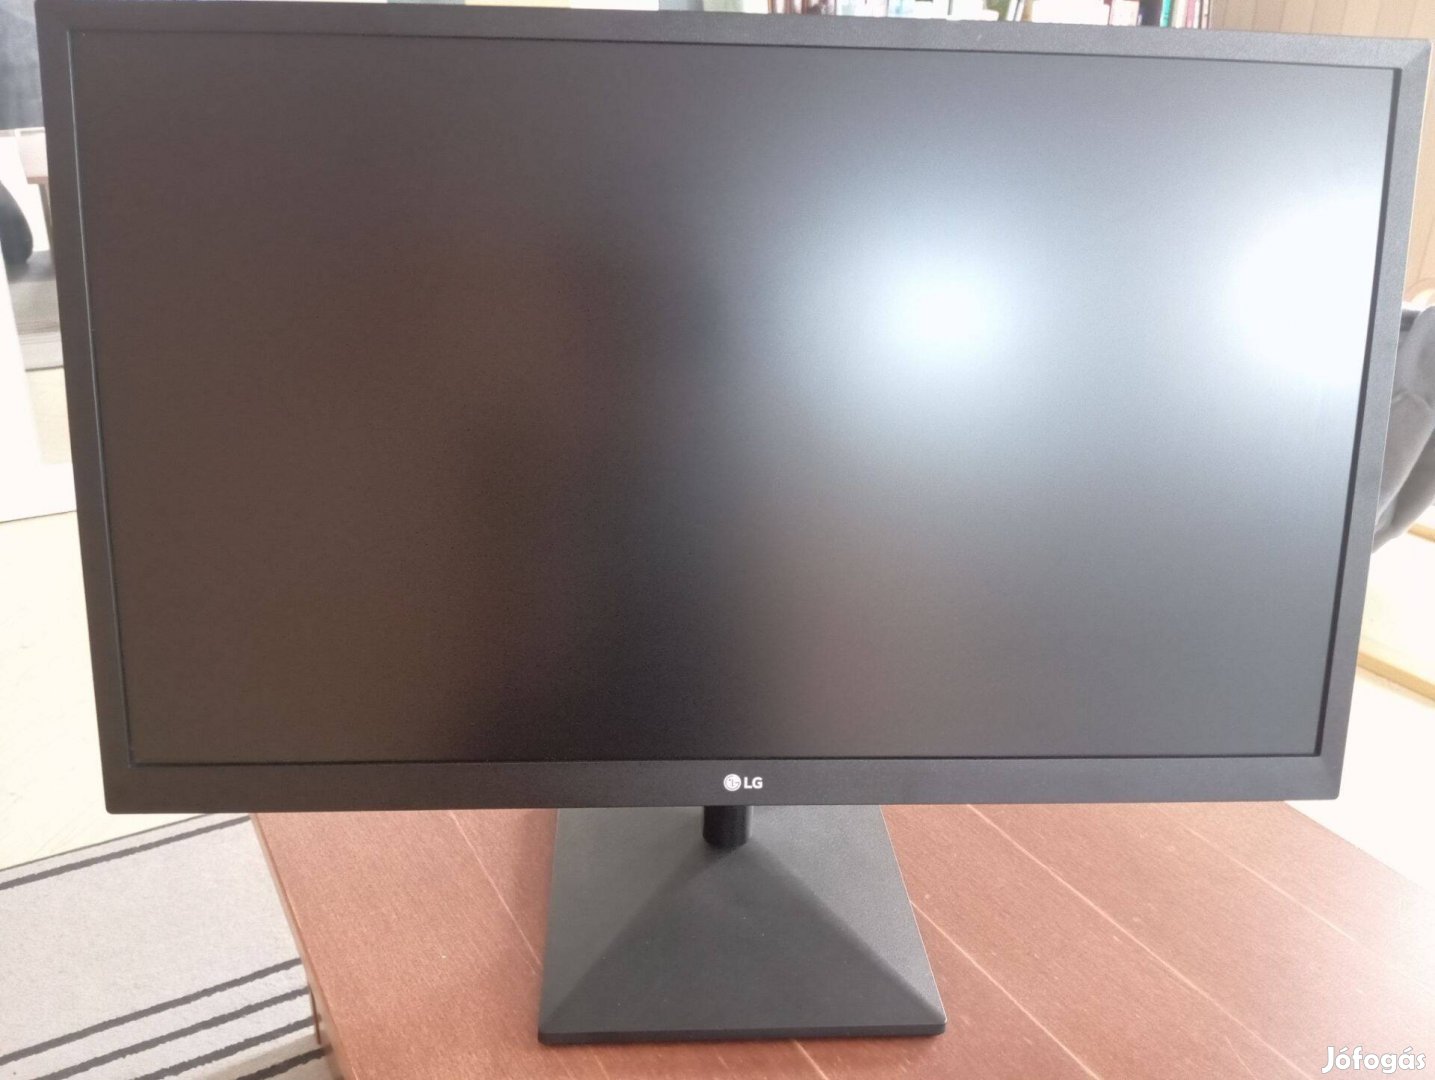 Eladó egy használt LG 27MK 430H monitor